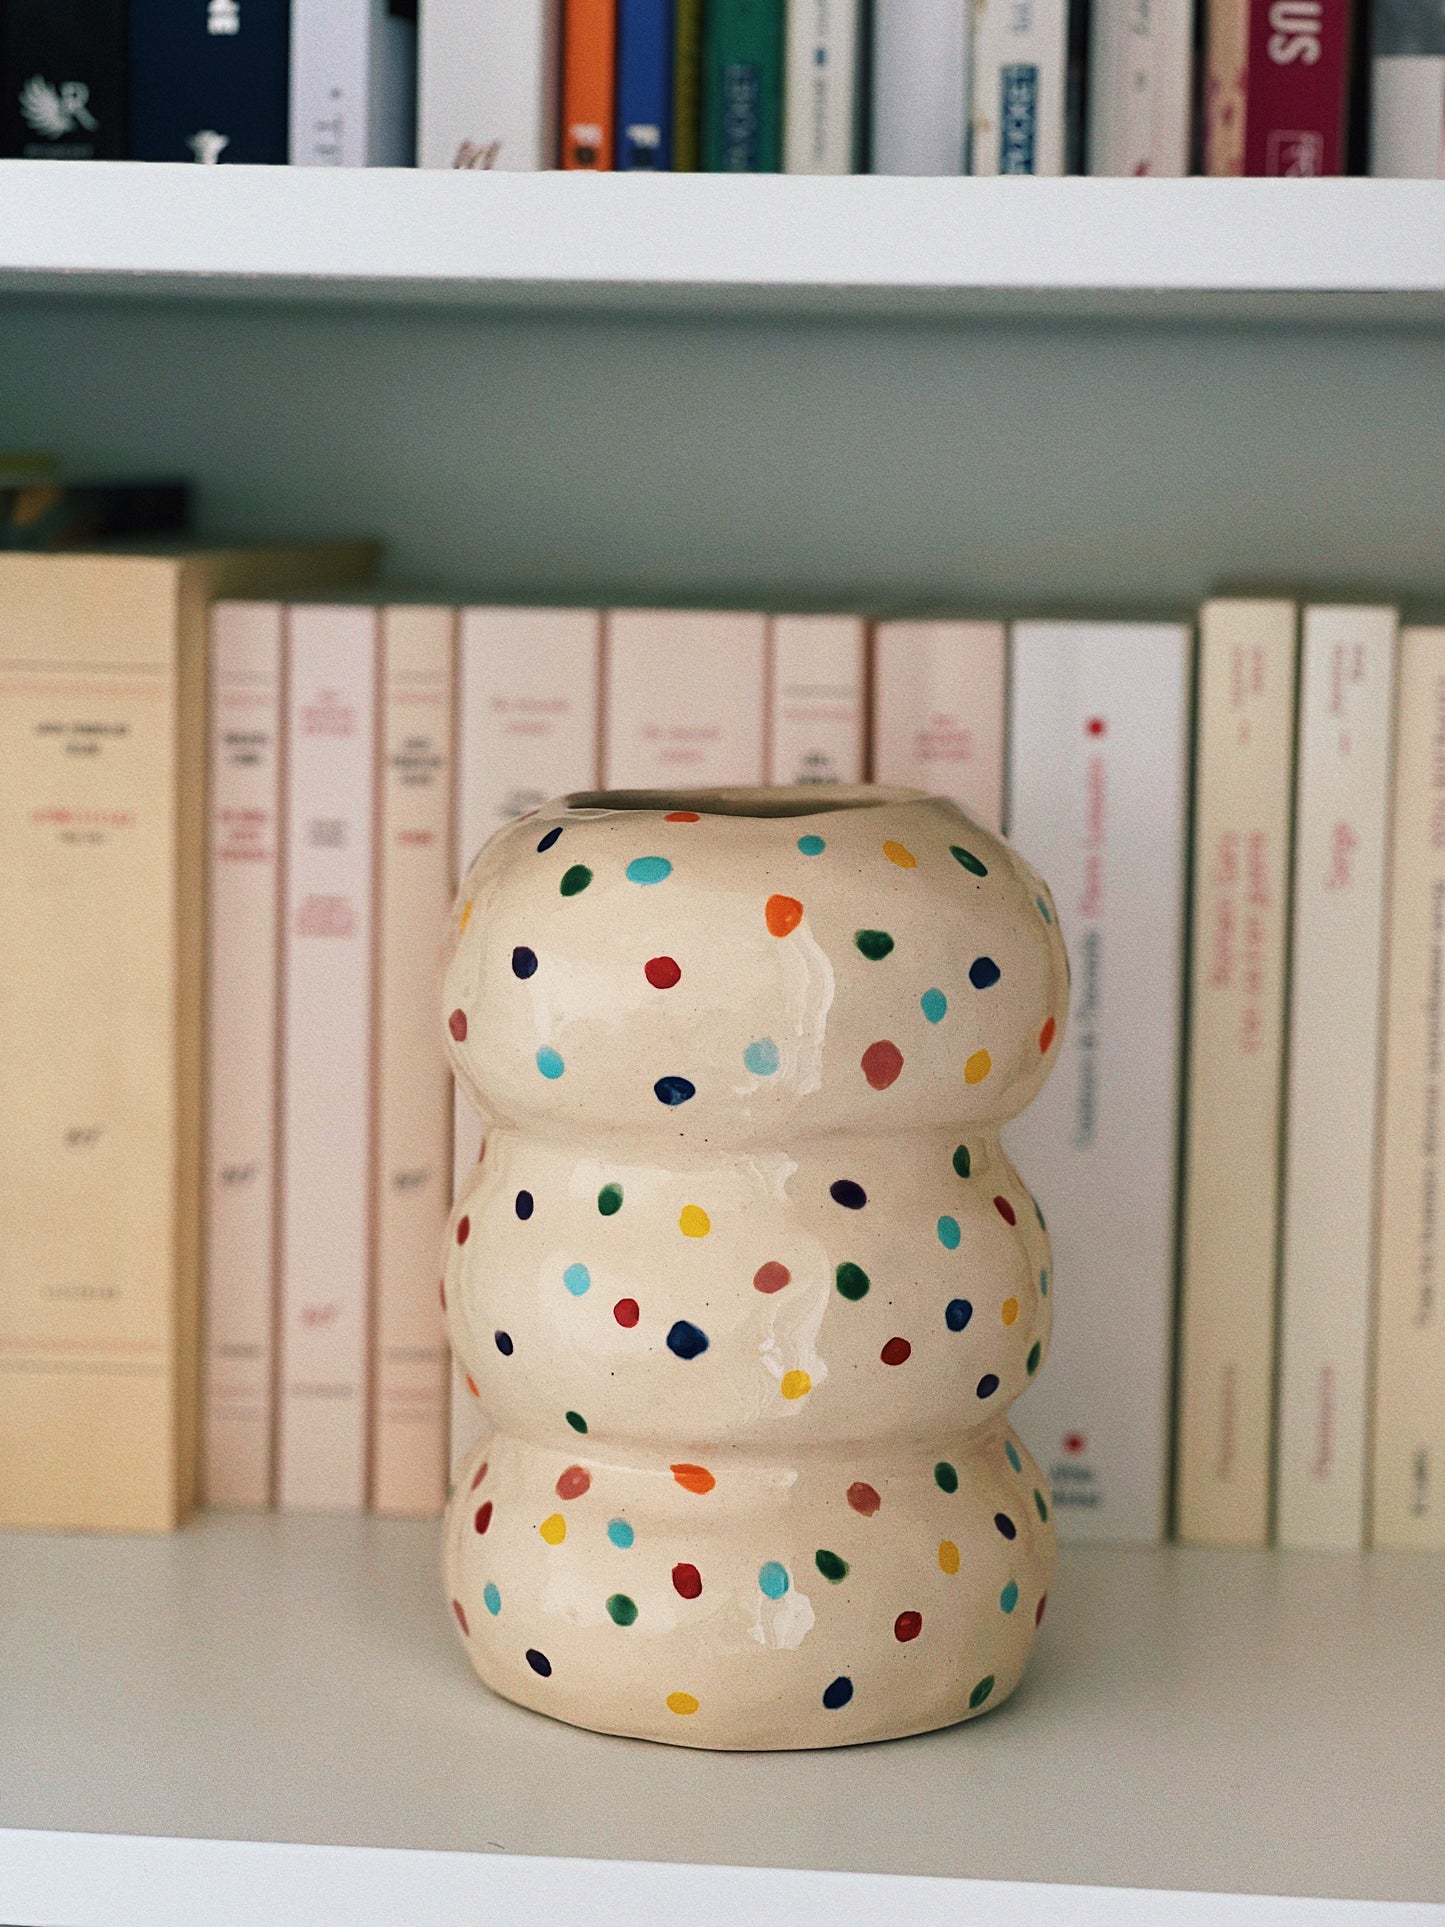 Bowl vase